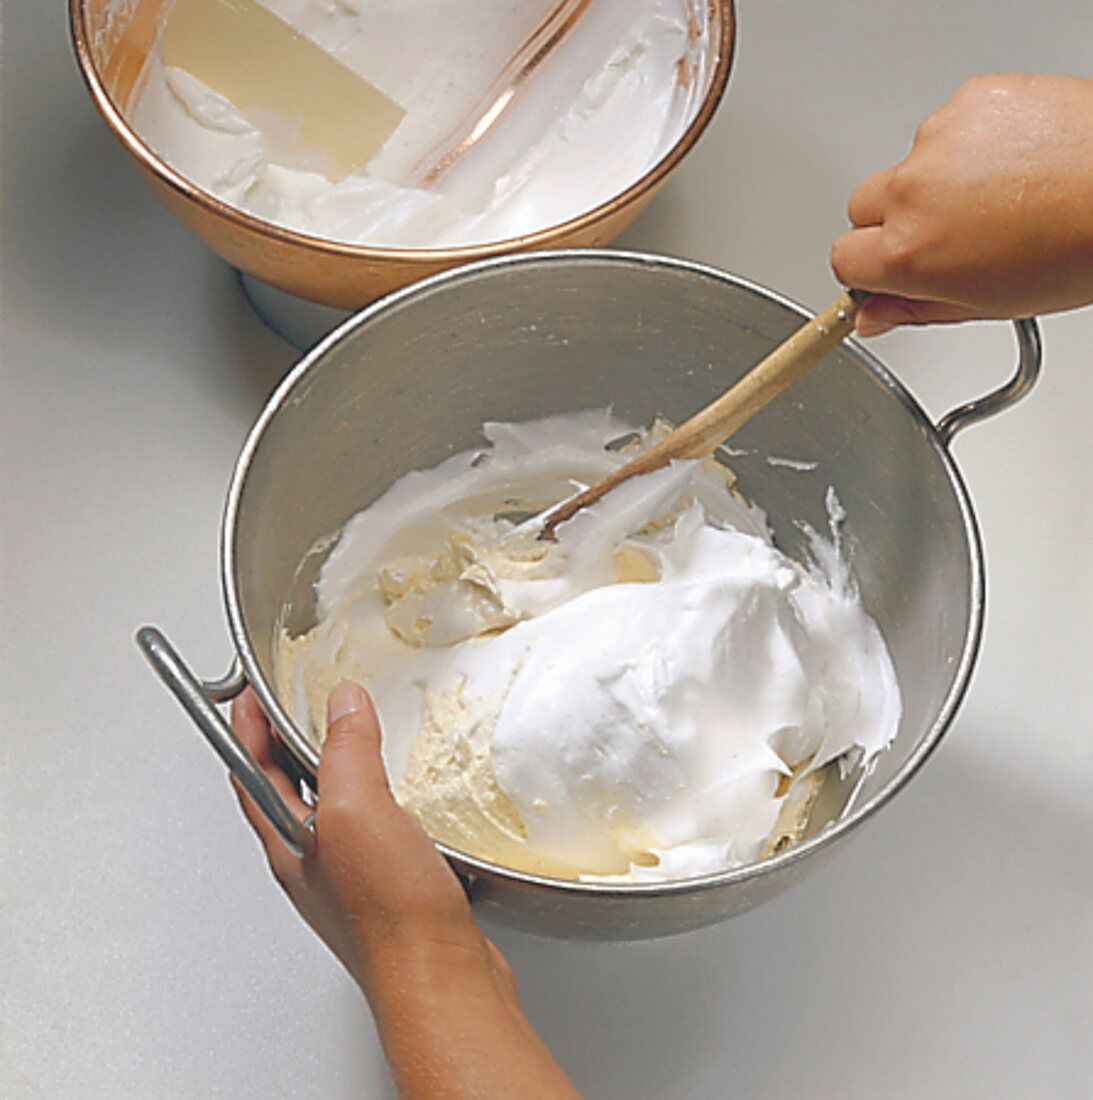 Buch der Kuchen und Torten: Step 2: Eischnee unter Masse heben